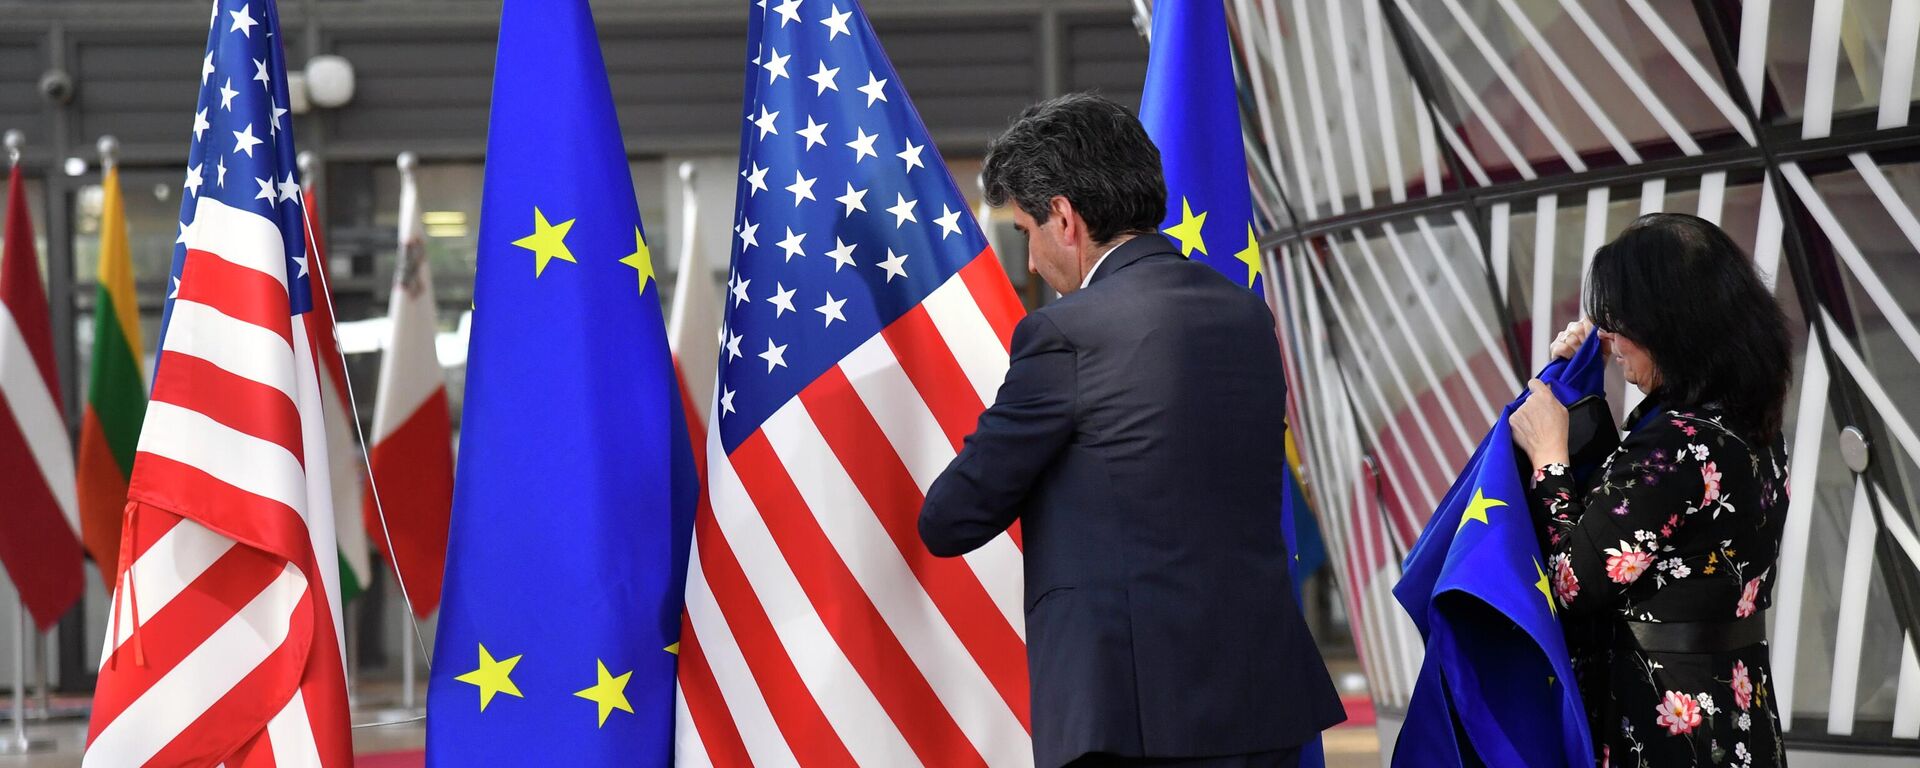 Члены протокола с флагами Европейского Союза и США в Брюсселе. Архивное фото - Sputnik Кыргызстан, 1920, 26.12.2022